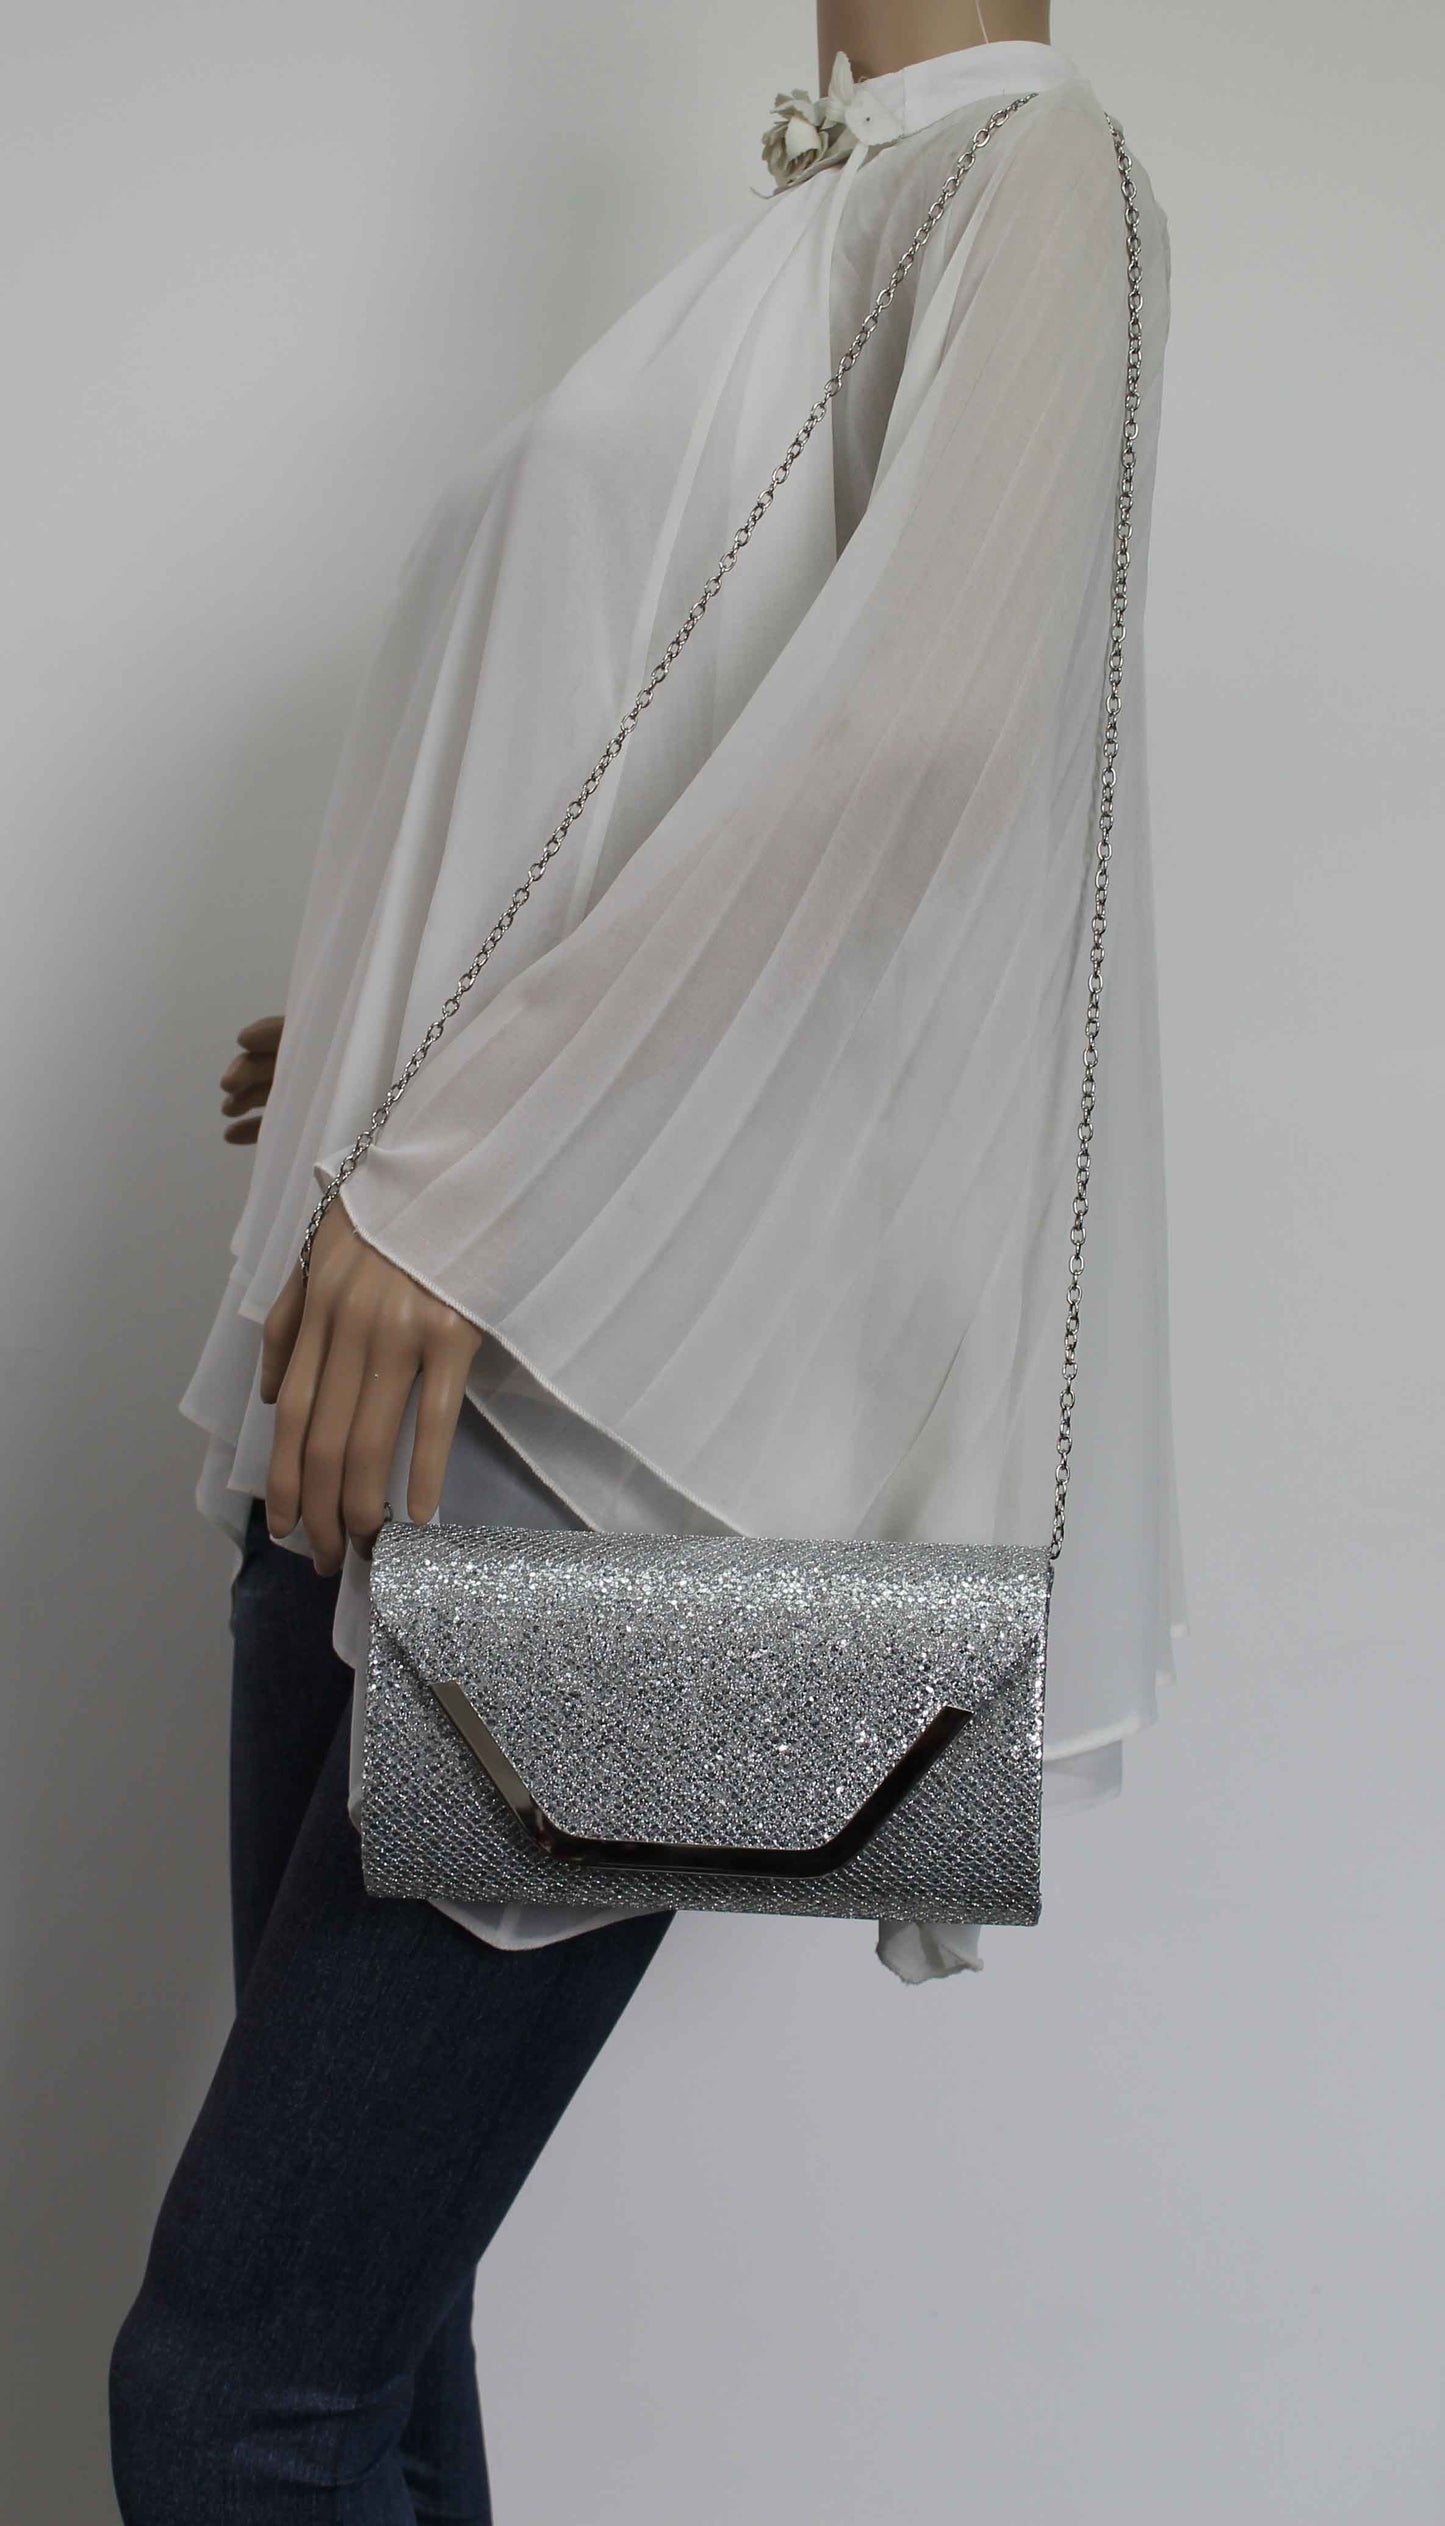 SWANKYSWANS Kamila Clutch Bag Silver Cute Cheap Clutch Bag For Weddings School and Work